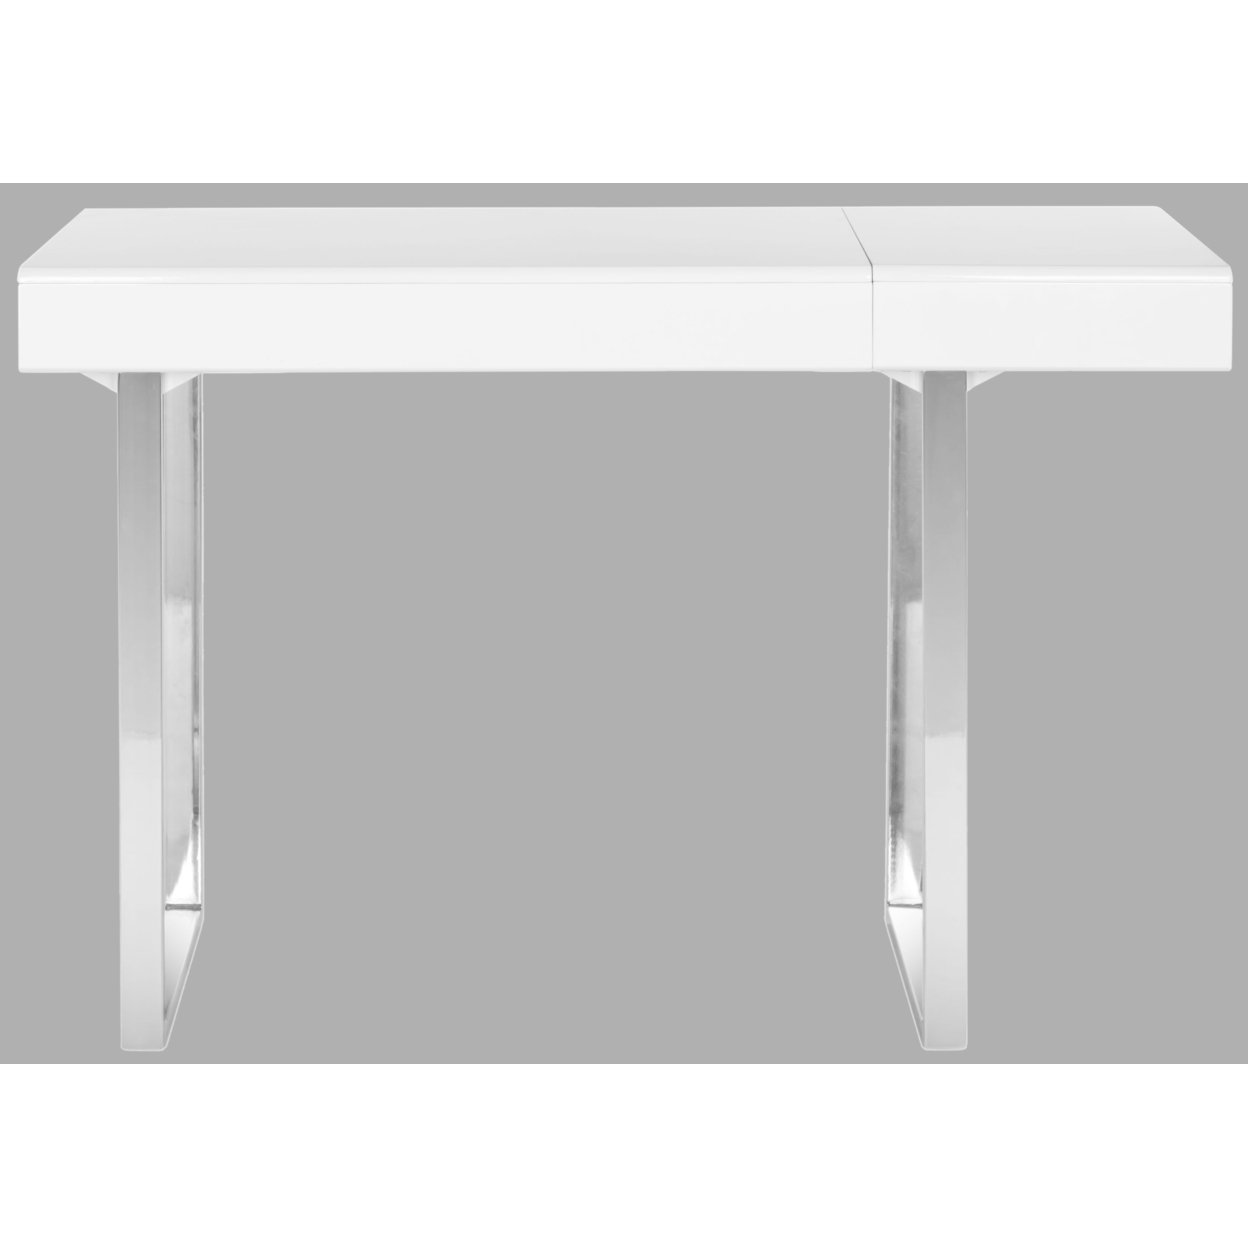 SAFAVIEH Berkley Desk White / Chrome